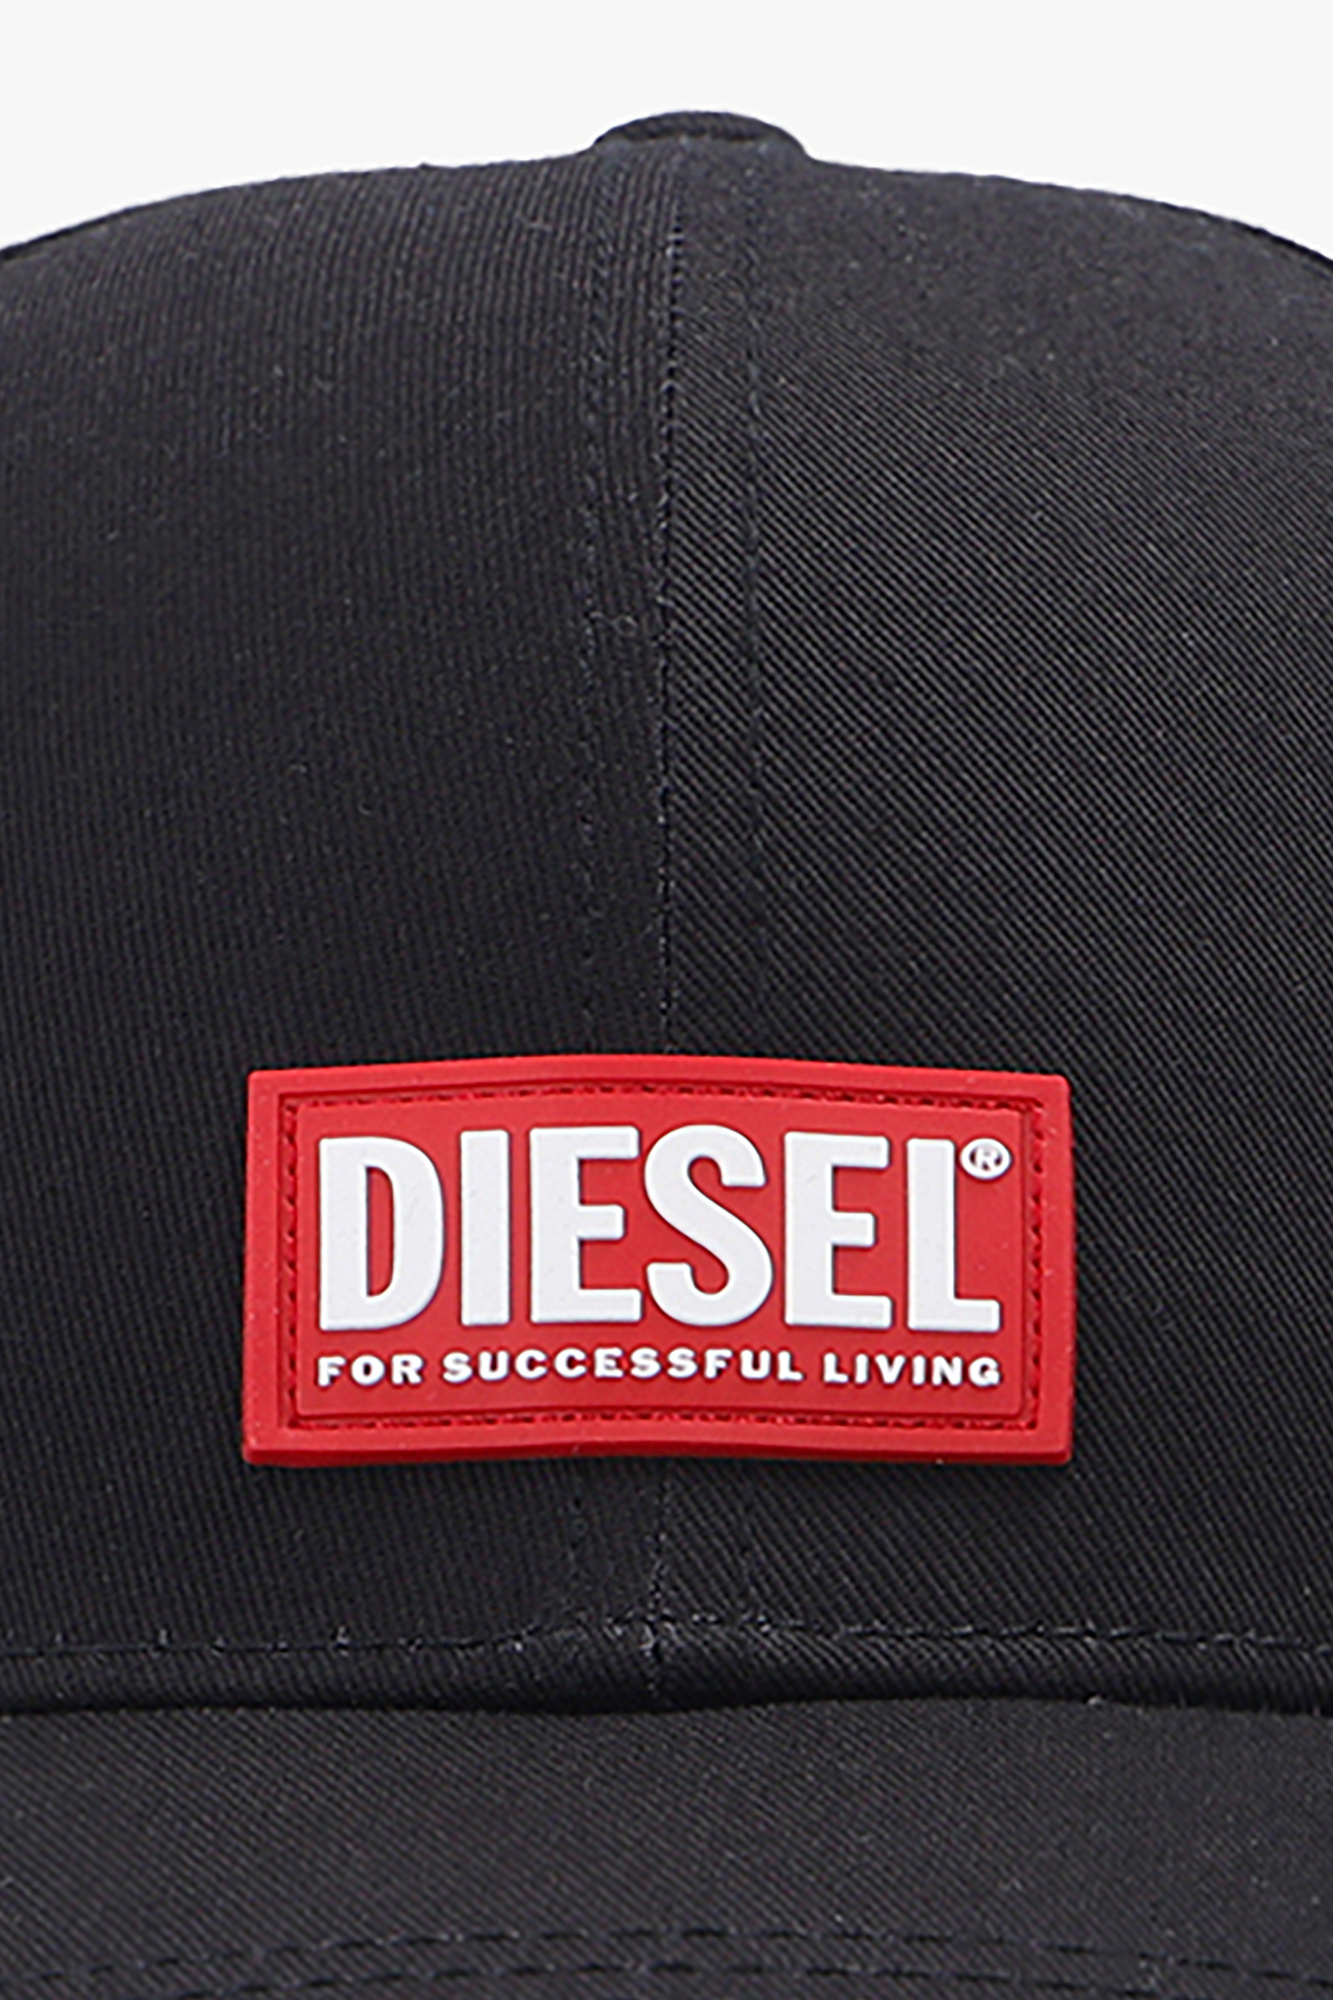 Diesel 'key-chains eyewear caps